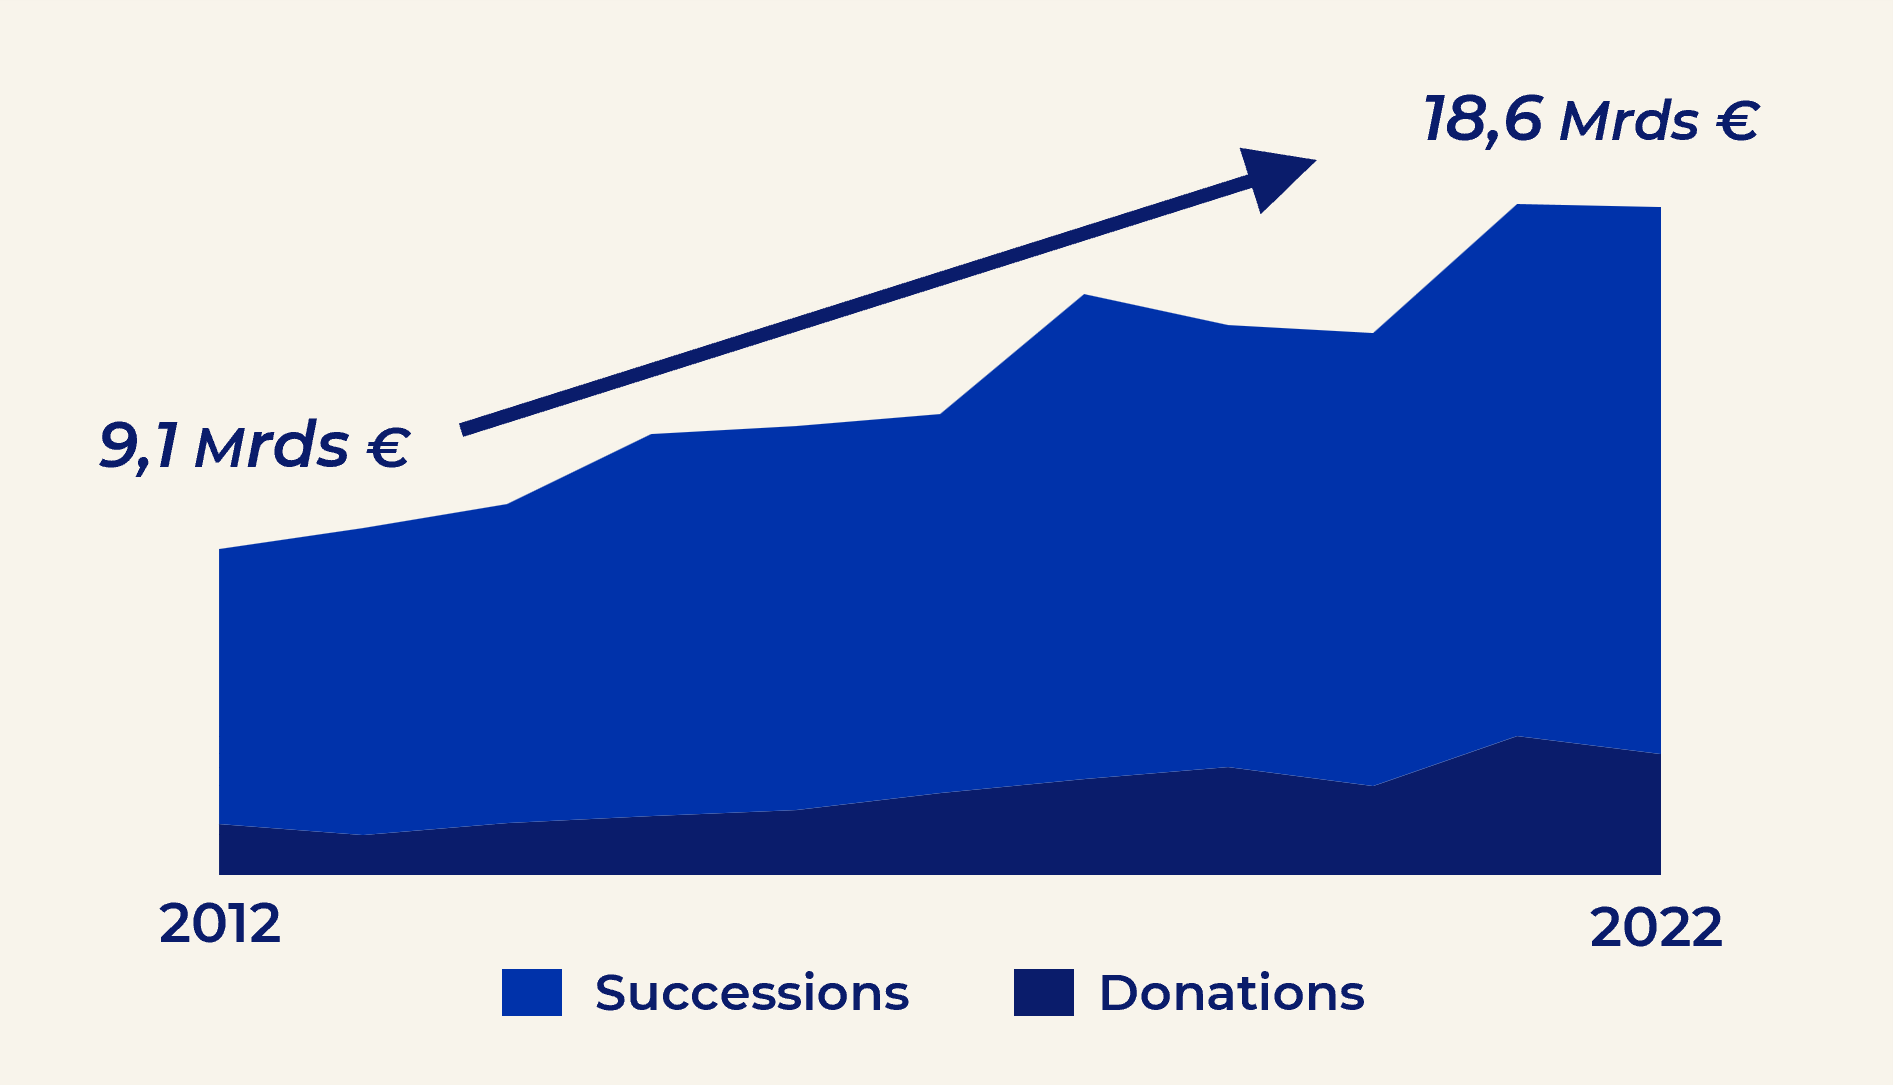 Evolution des droits de succession et droits de donation sur 10 ans - 2012 à 2022